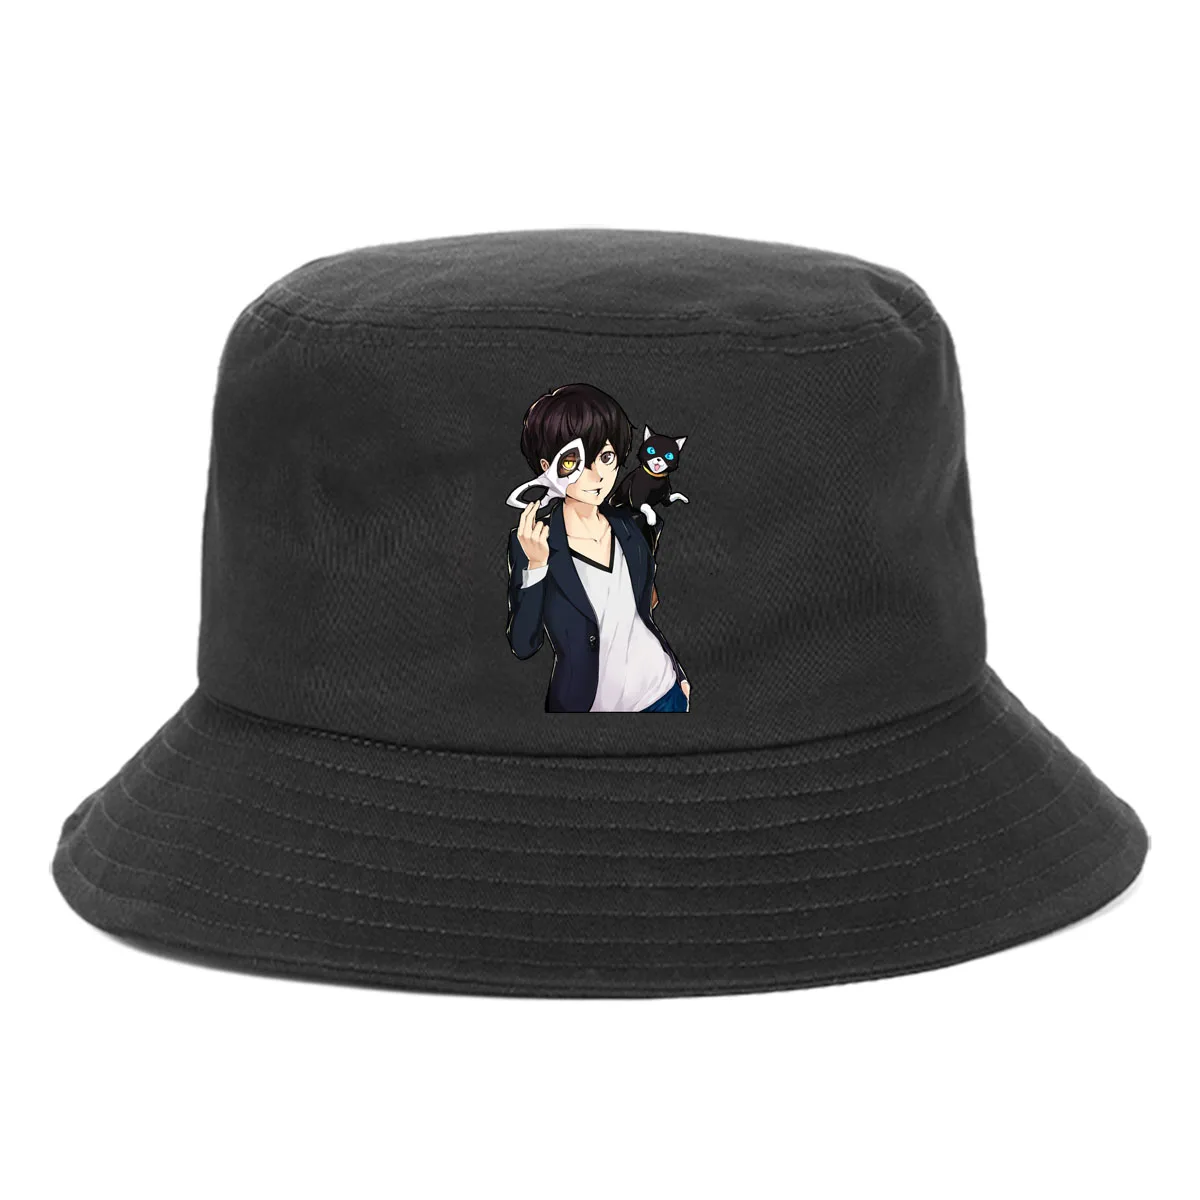 

Teenagers Cotton Cartoon Bucket Hat Women Summer Sunscreen Hat Outdoor Fisherman Cap Beach Cap Bucket Hat for anime Persona 5